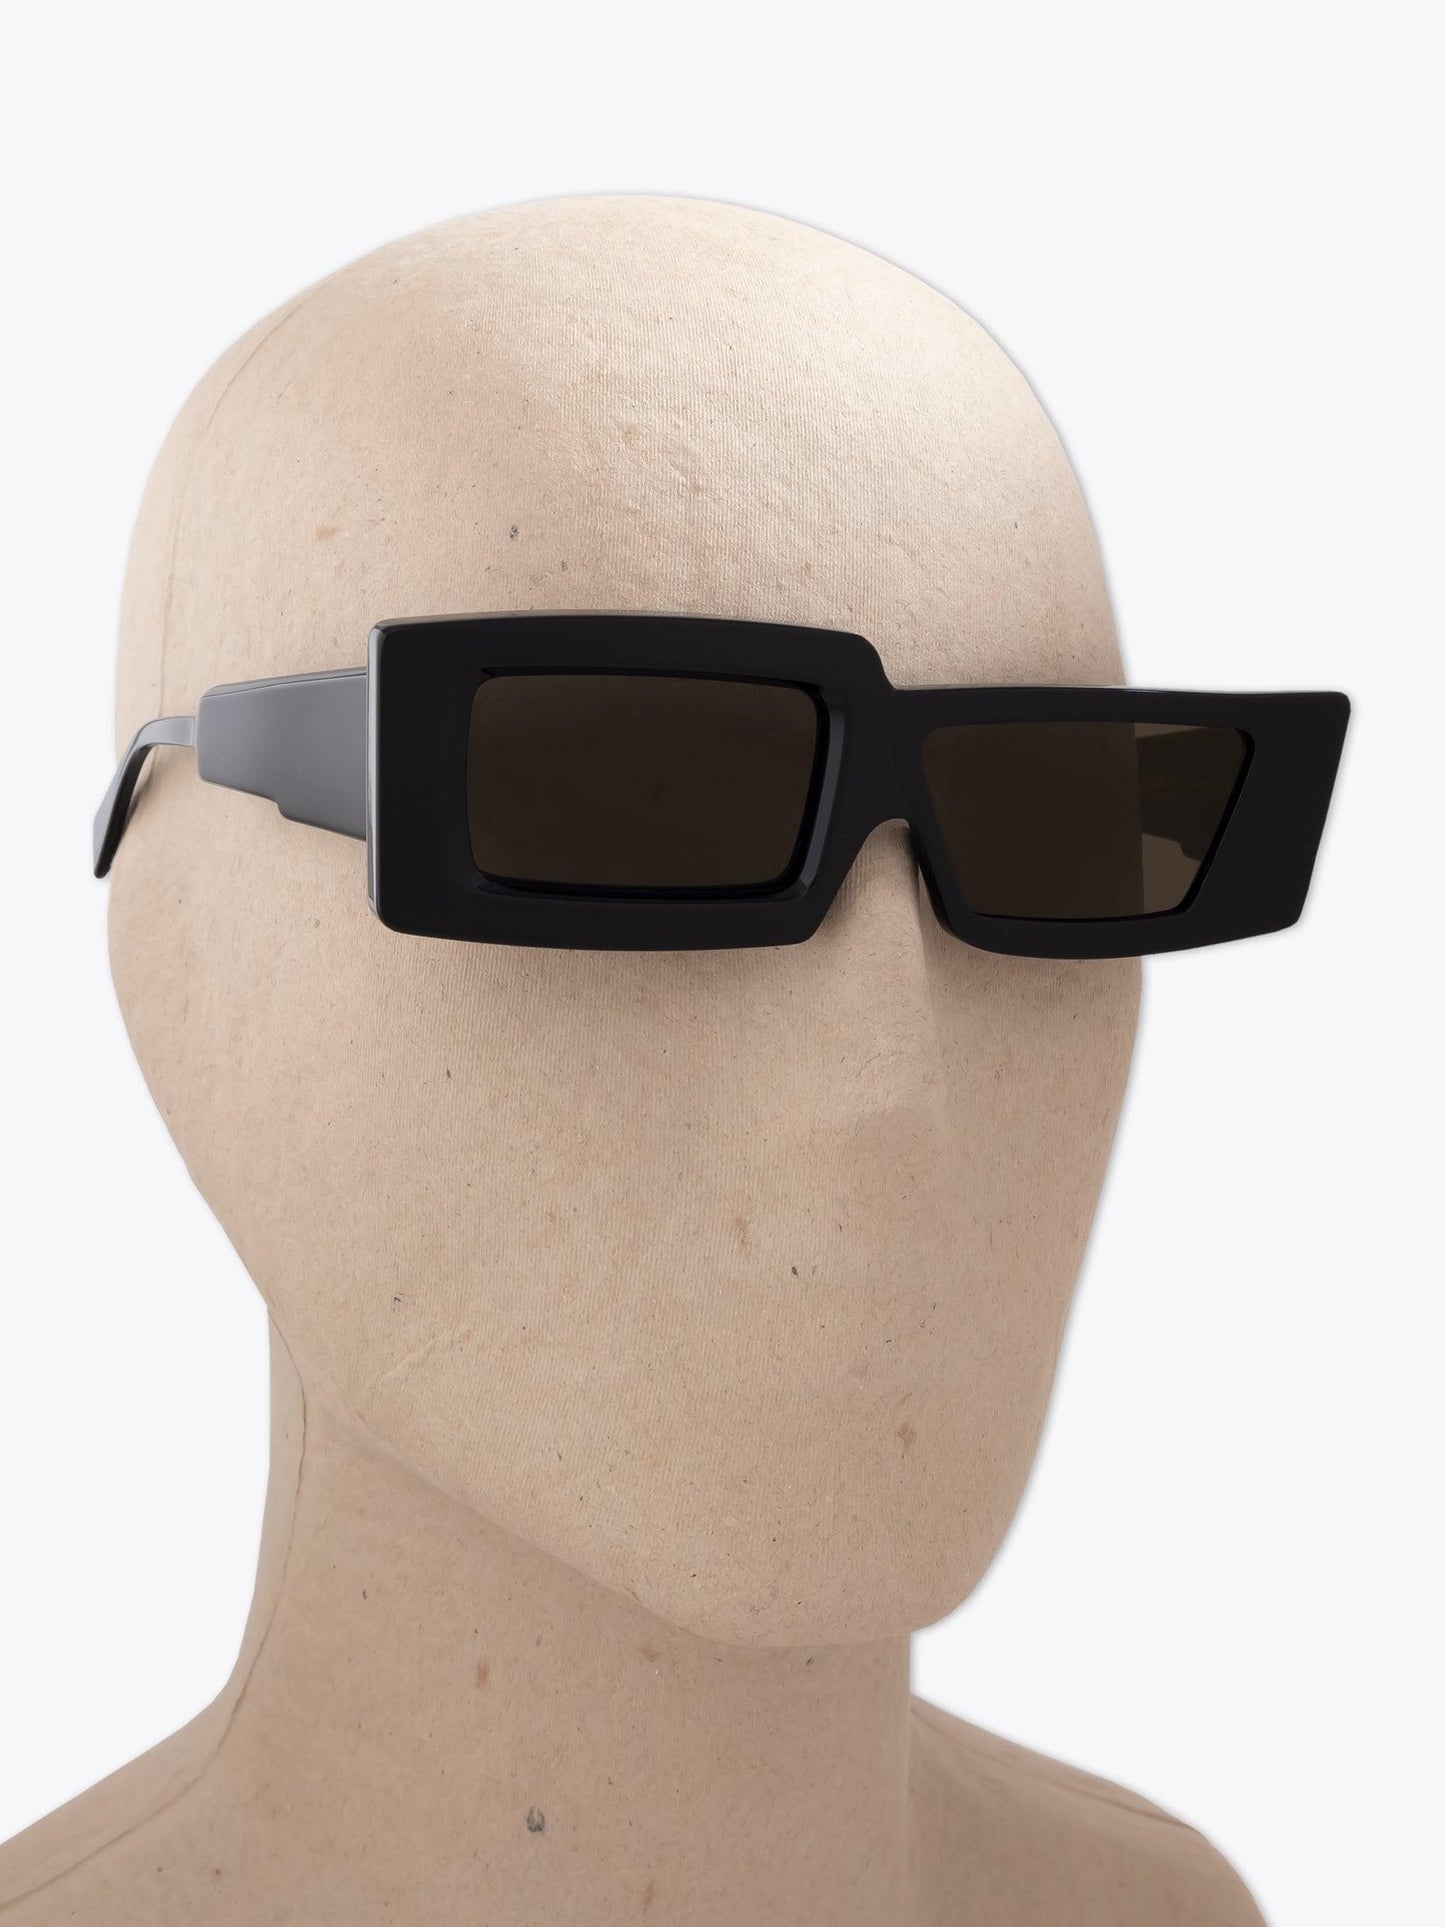 Kuboraum Mask X11 Black Sunglasses - APODEP.com